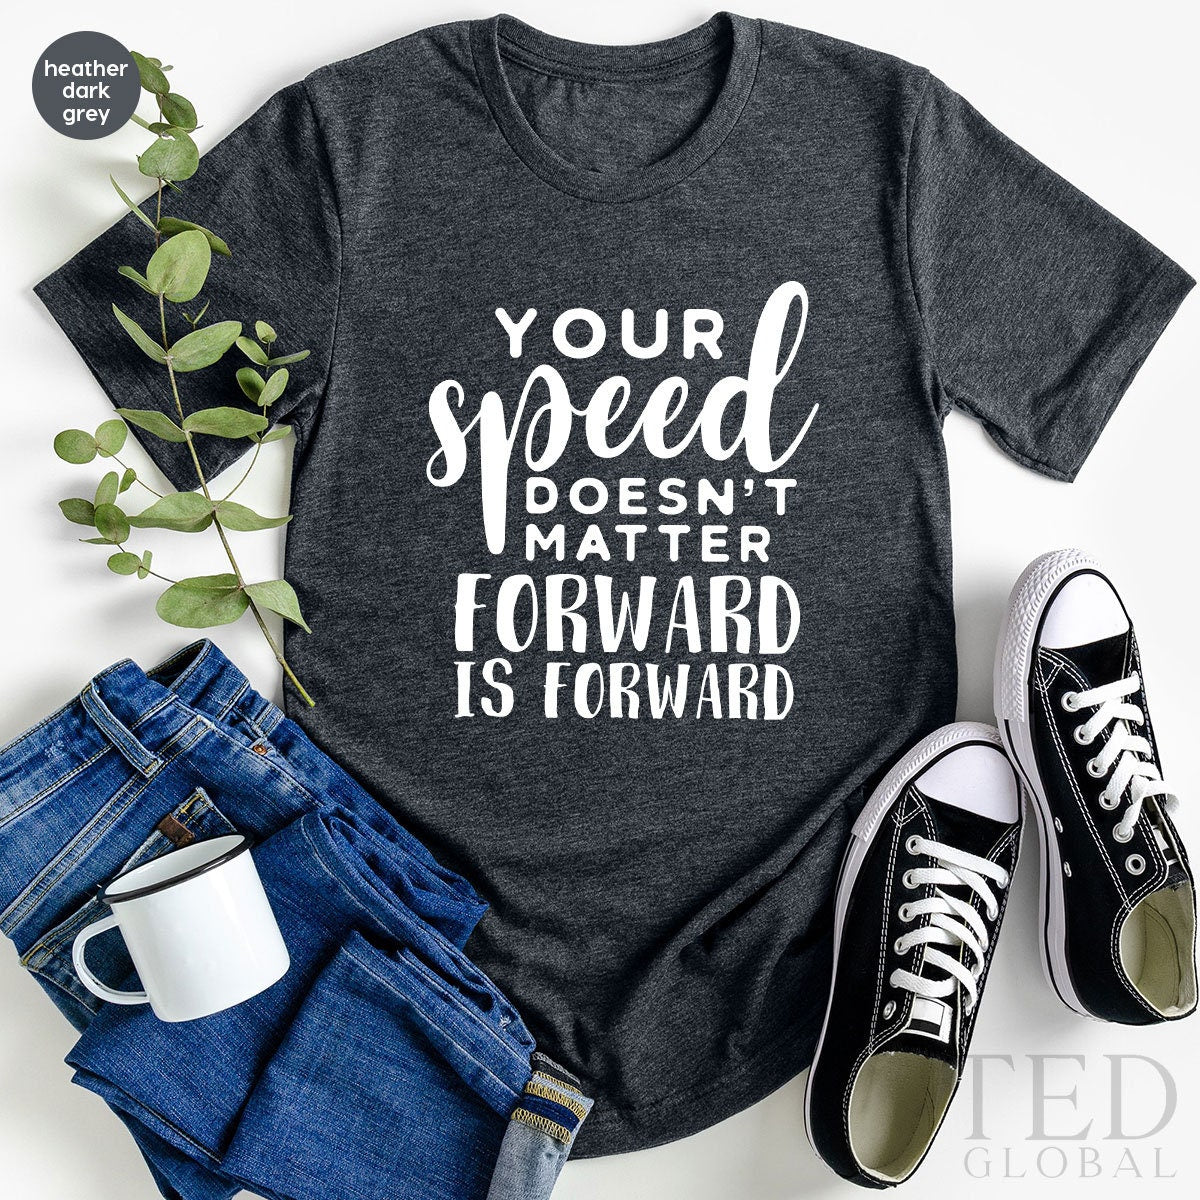 Cute Motivation Shirt, Inspirational  T-Shirt, Art Teacher T Shirt, Art School Shirts, Funny Motivational Tee, Gift For Kindergarten Teacher - Fastdeliverytees.com